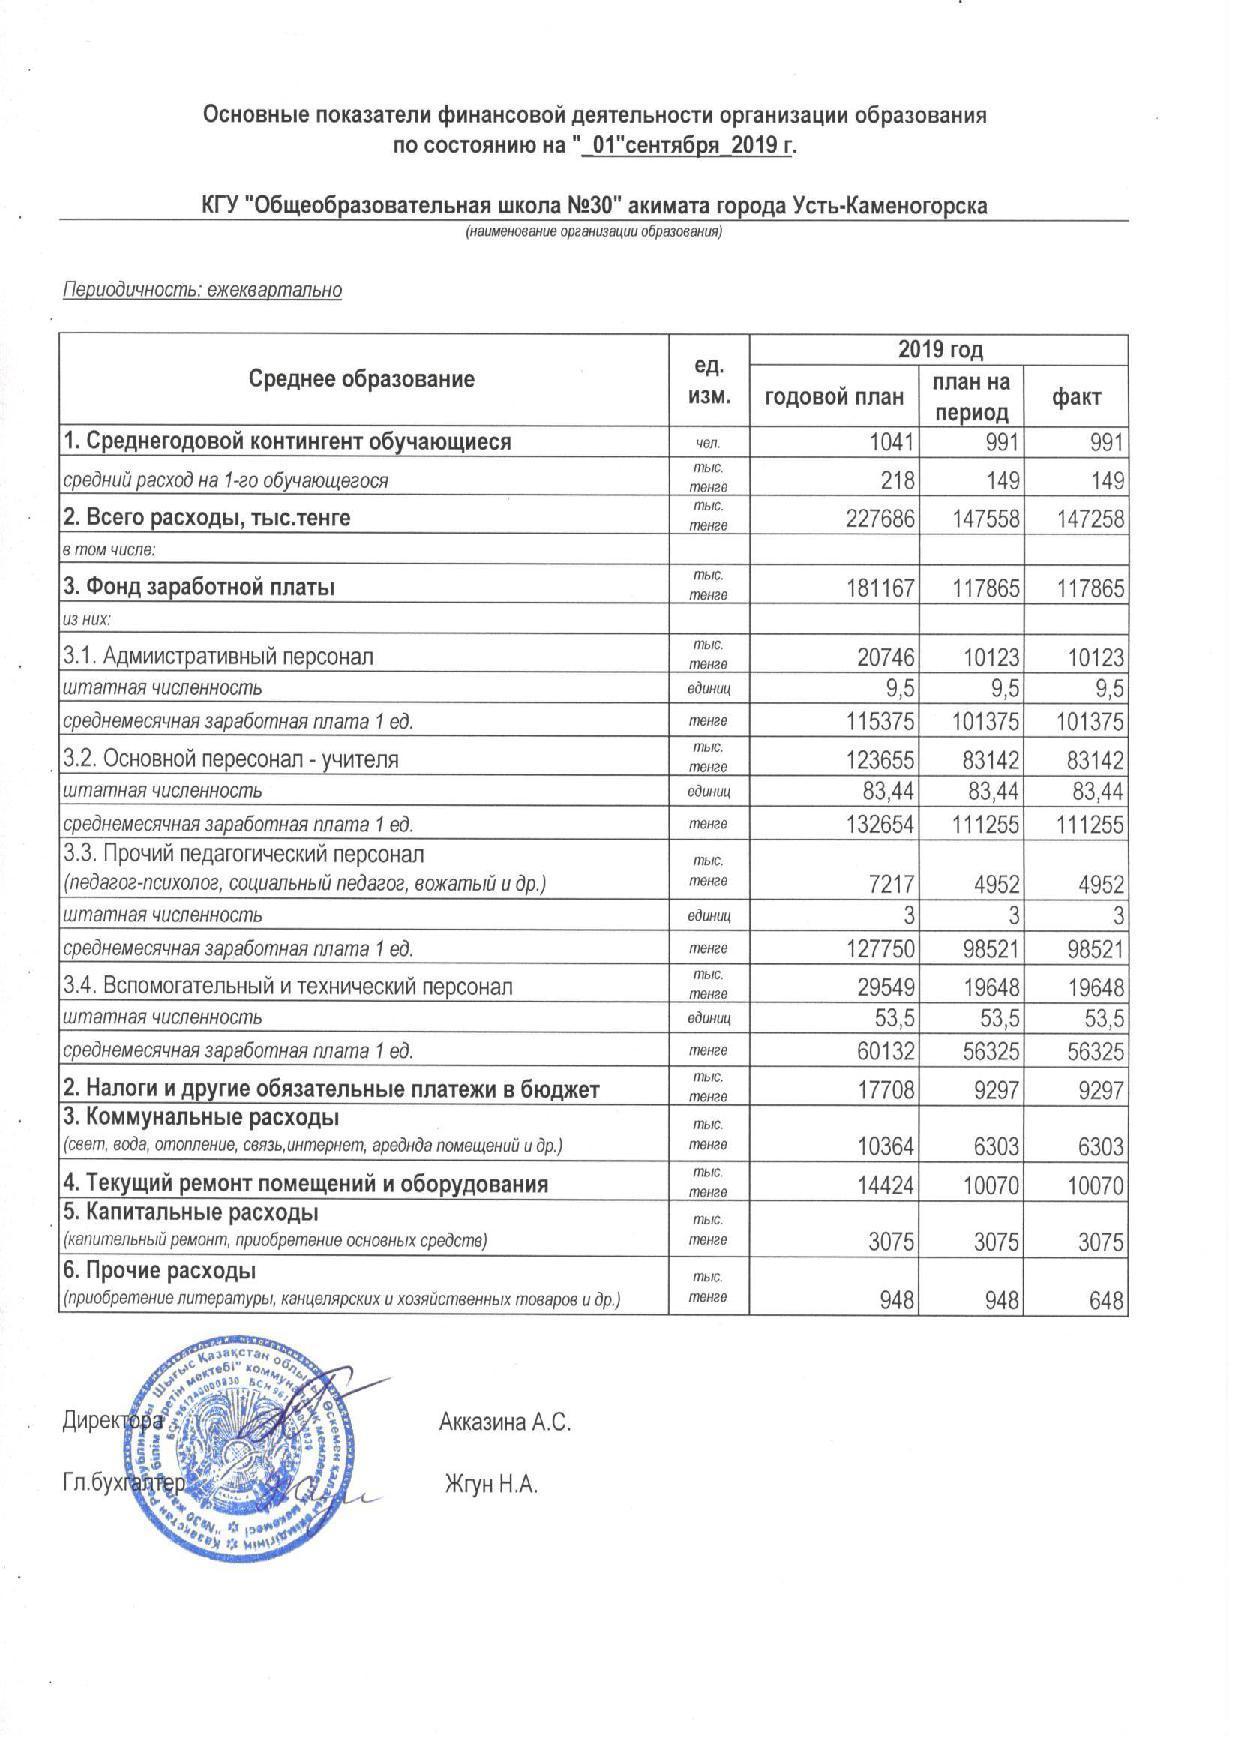 Основные показатели финансовой деятельности на 01.09.2019